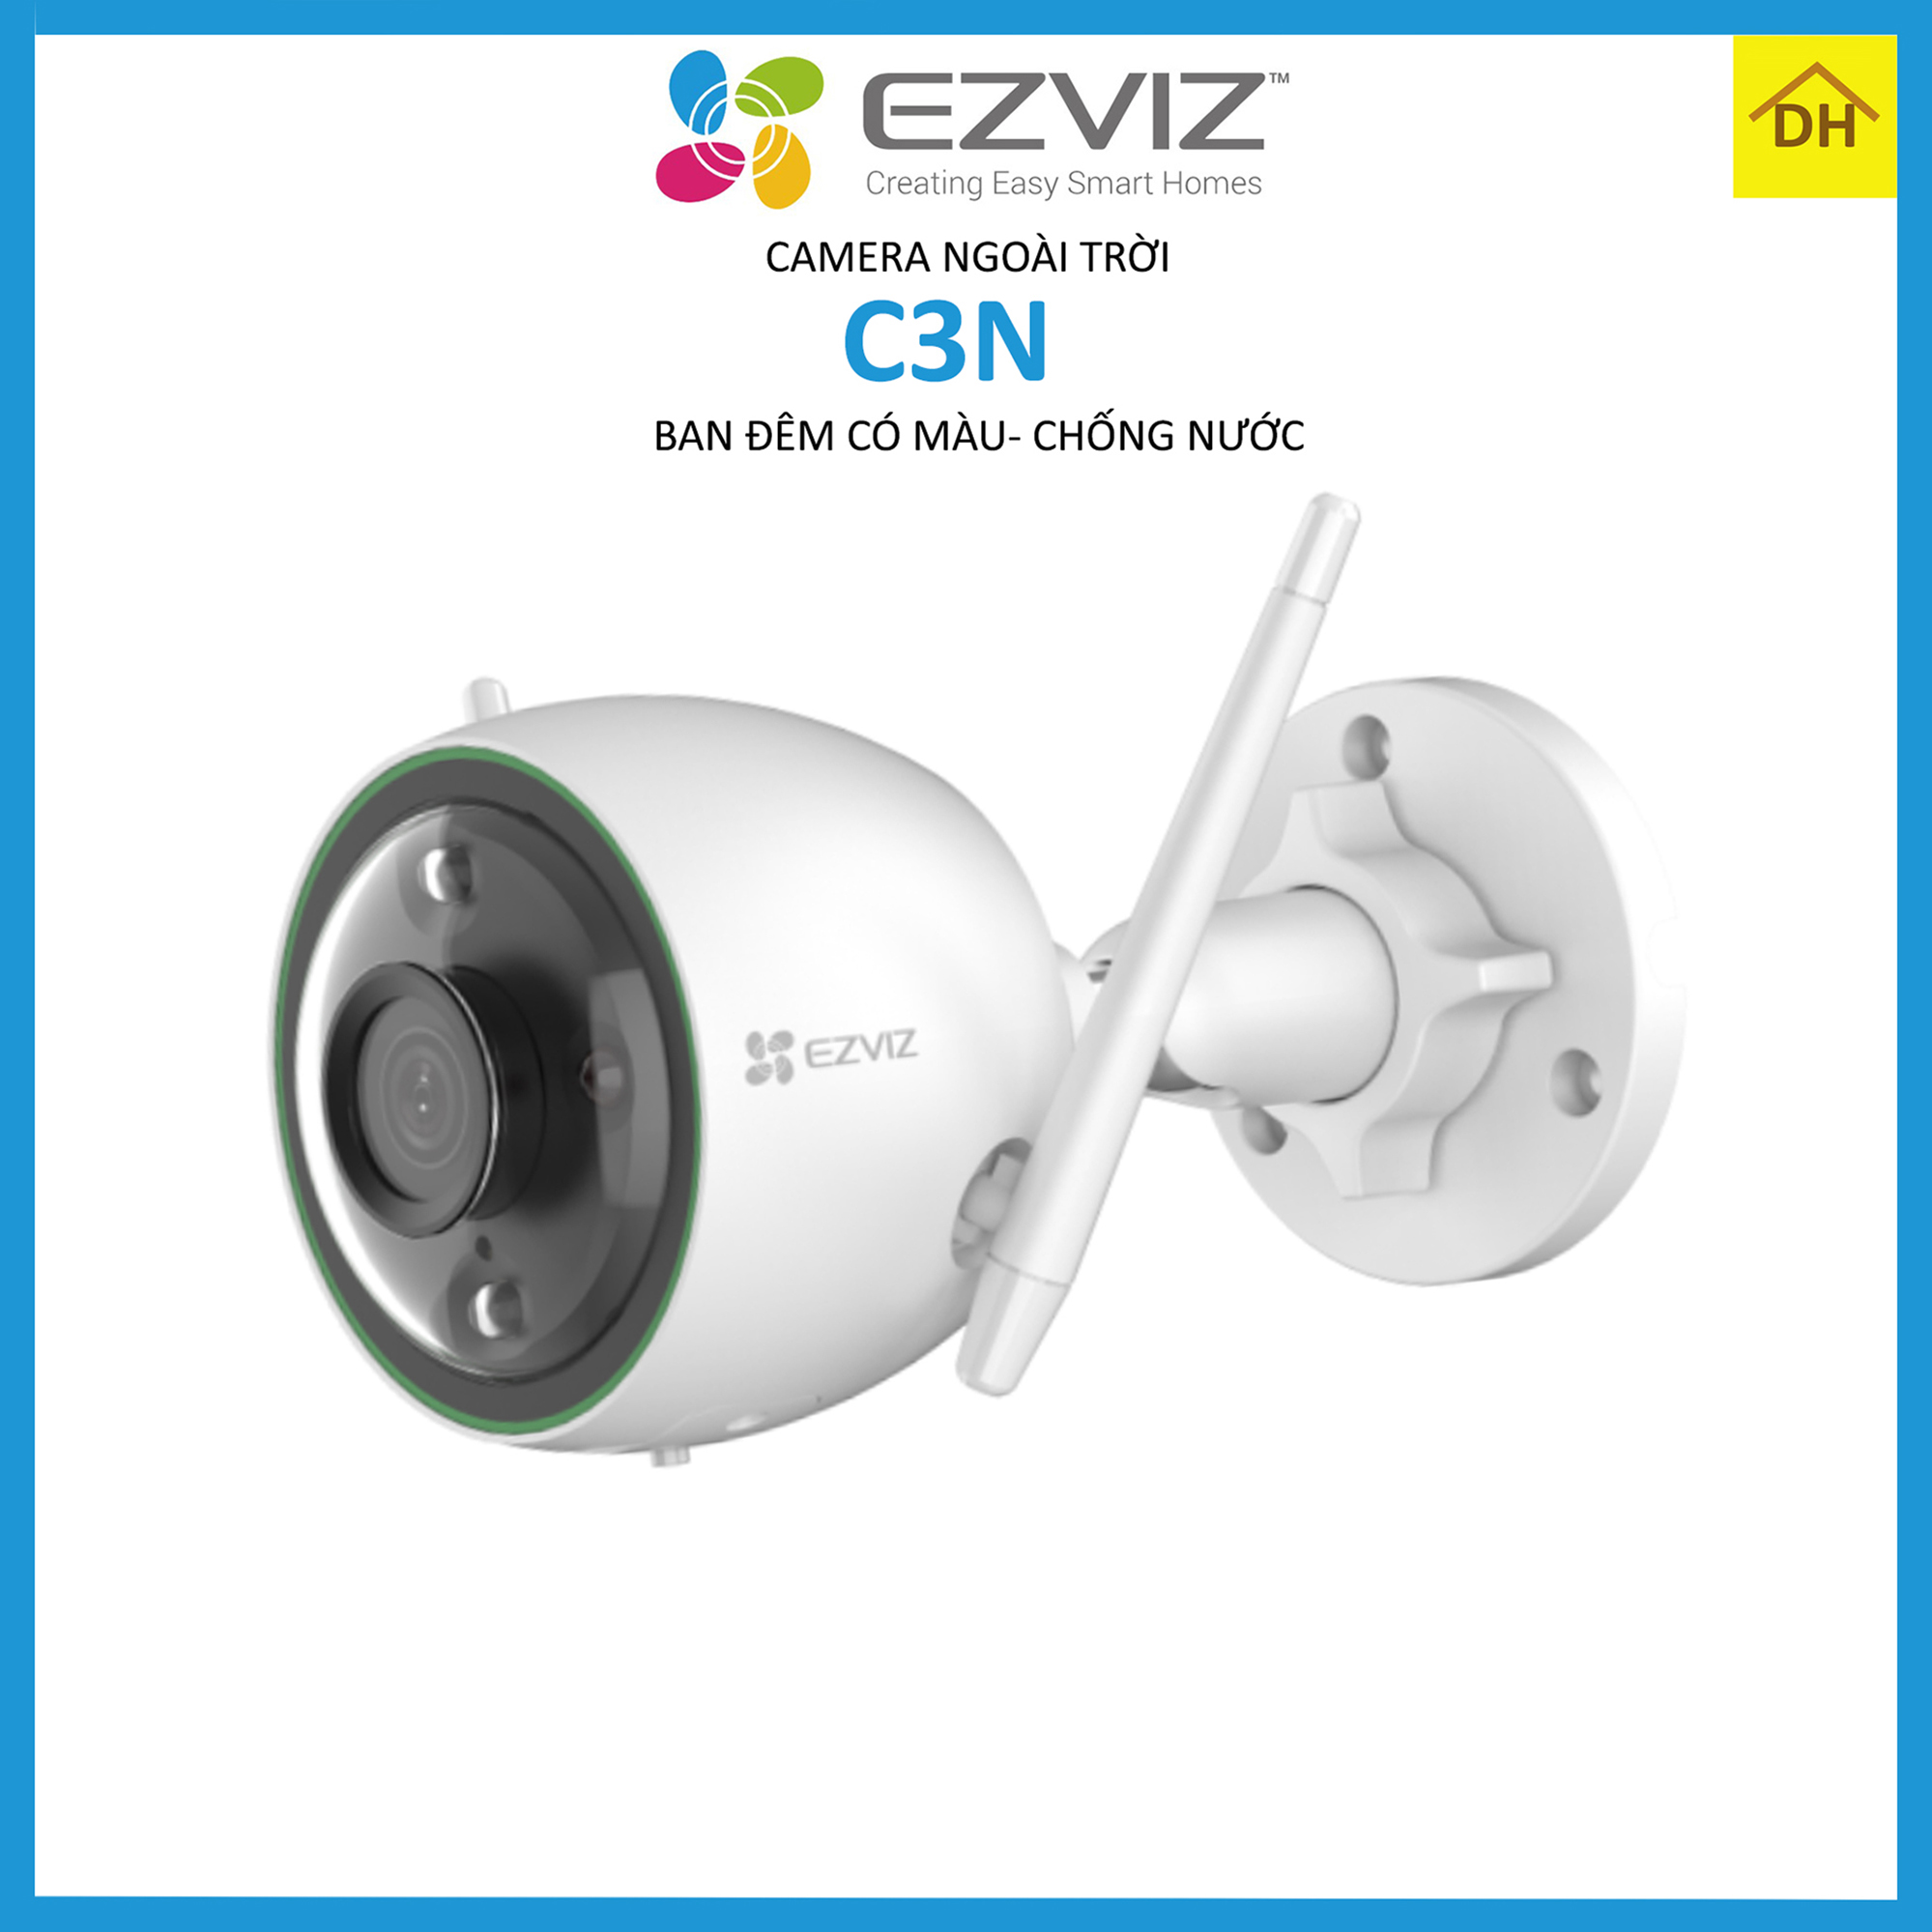 Camera EZVIZ C3N LOLOR 2M 1080p Góc Rộng 2.8mm-Ban Đêm Có Màu- Chống Nước